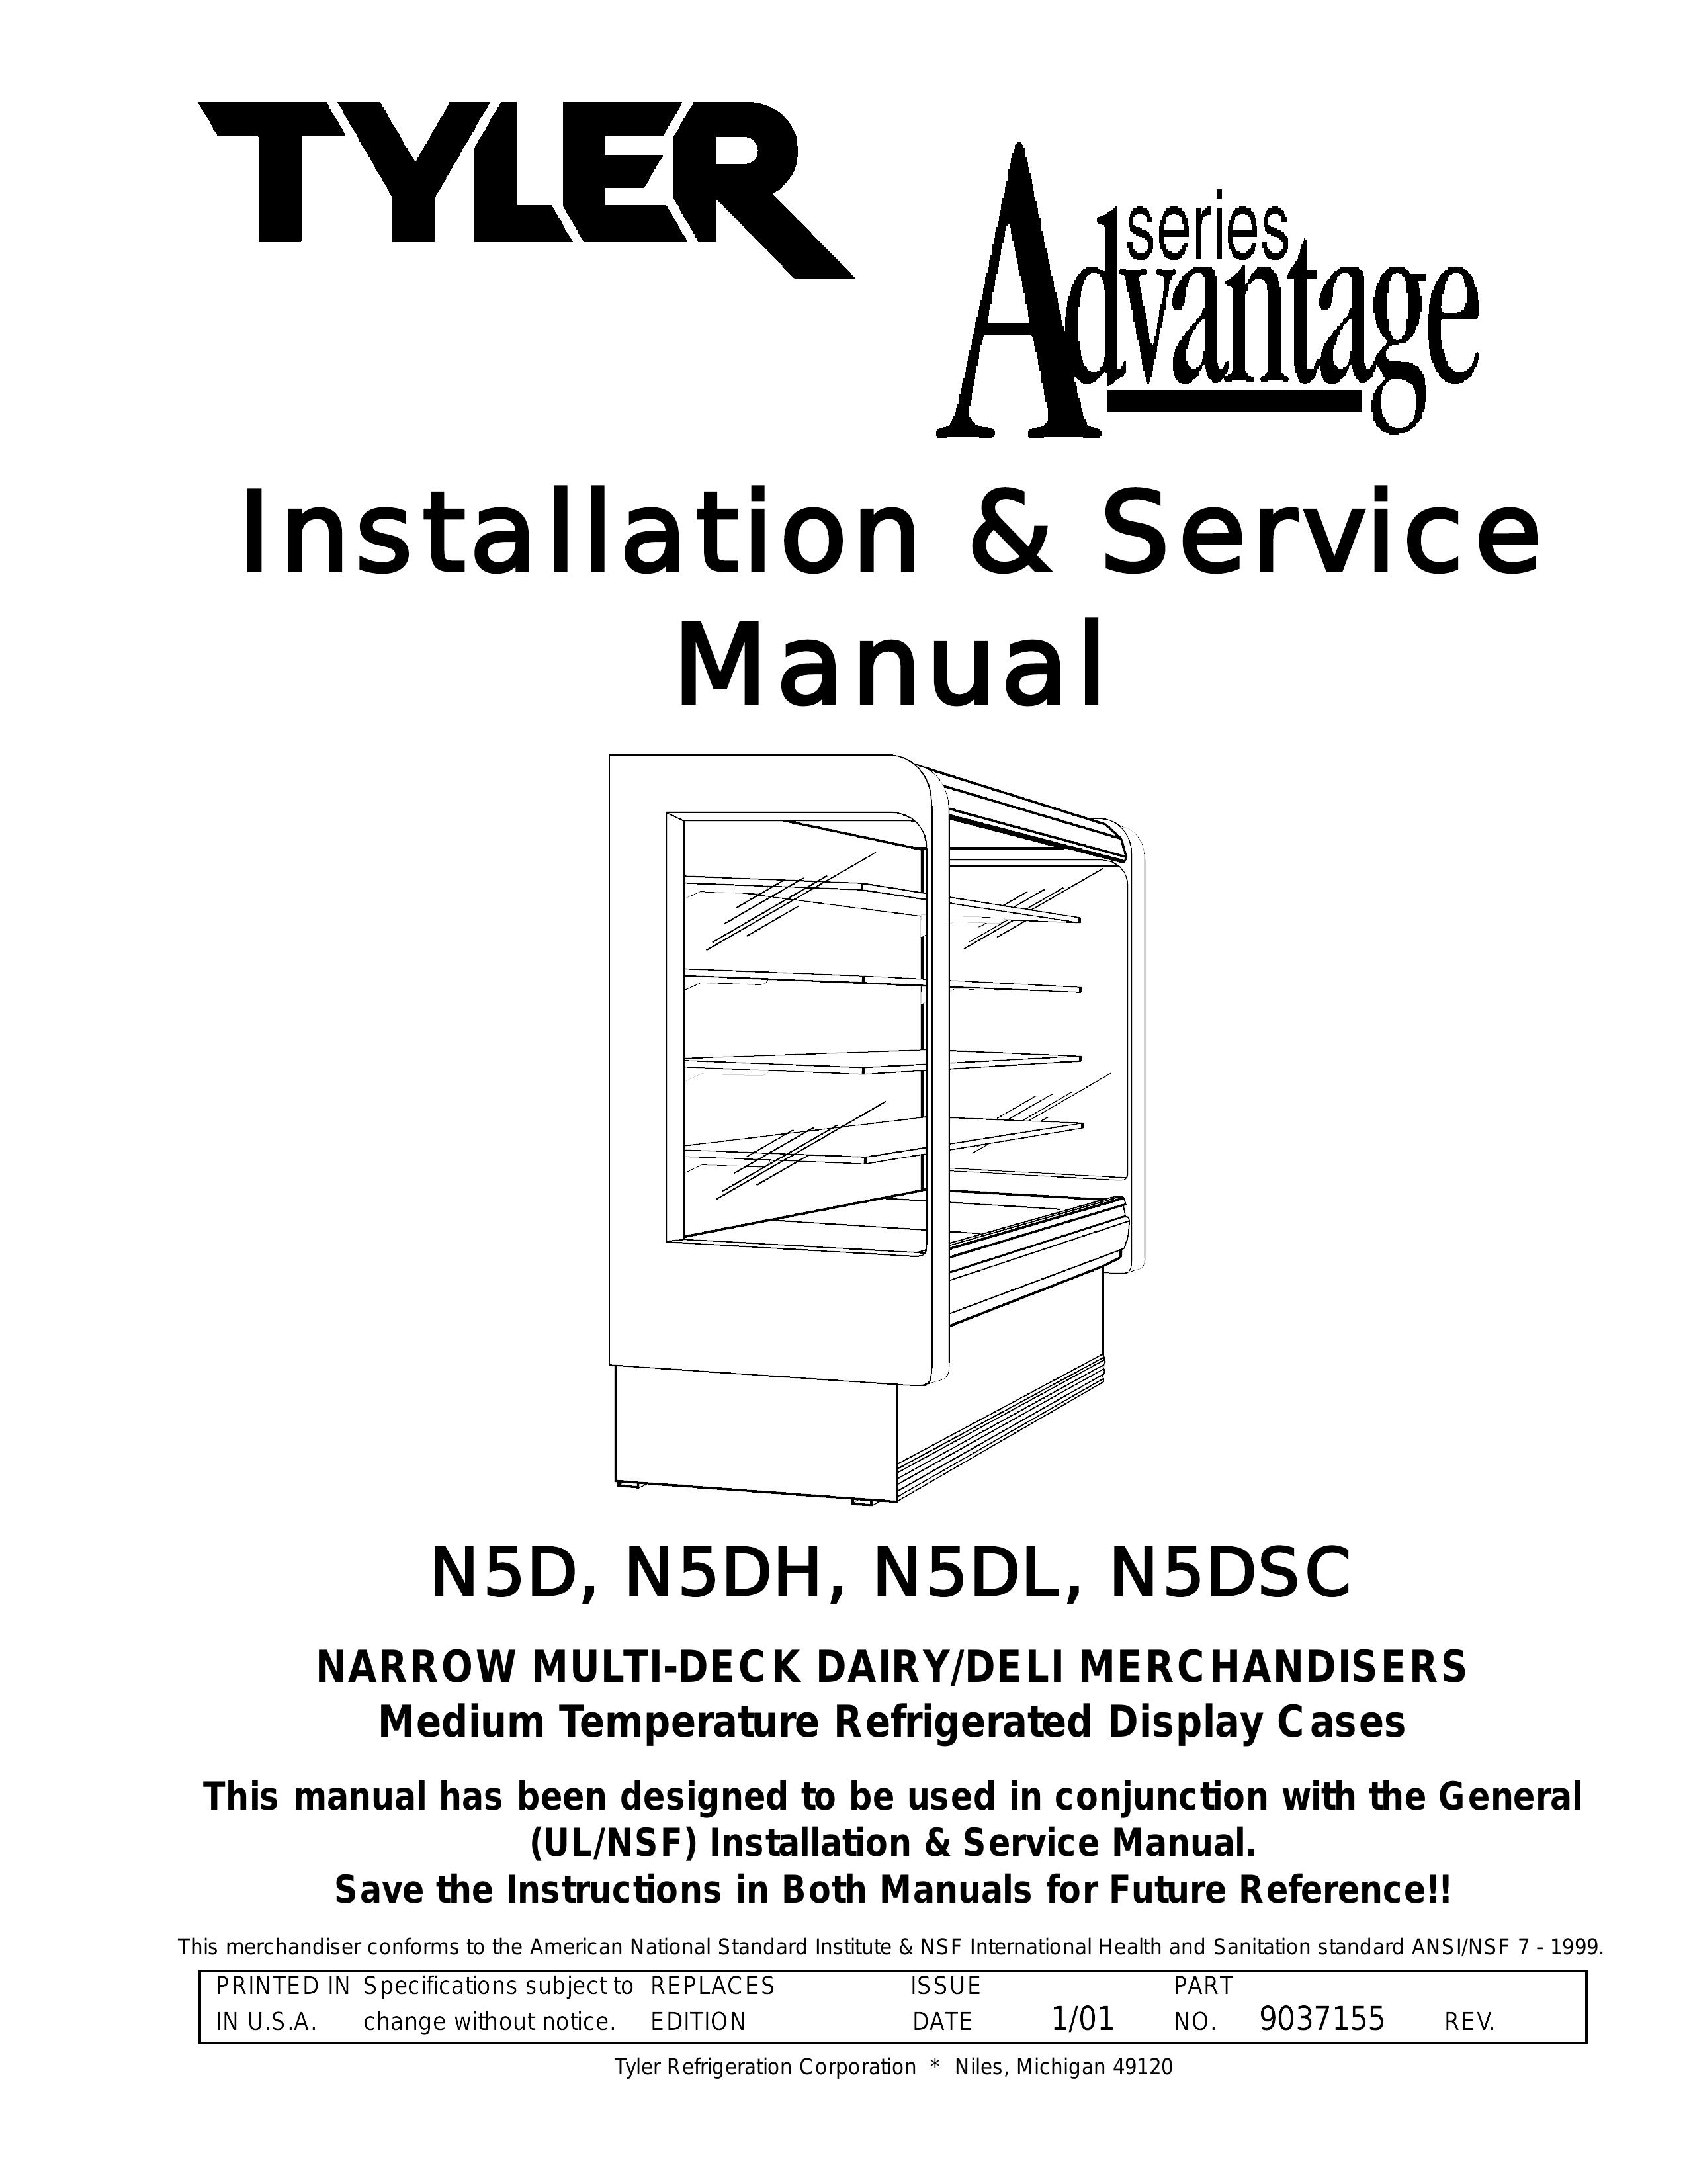 Tyler Refrigeration N5DH Refrigerator User Manual